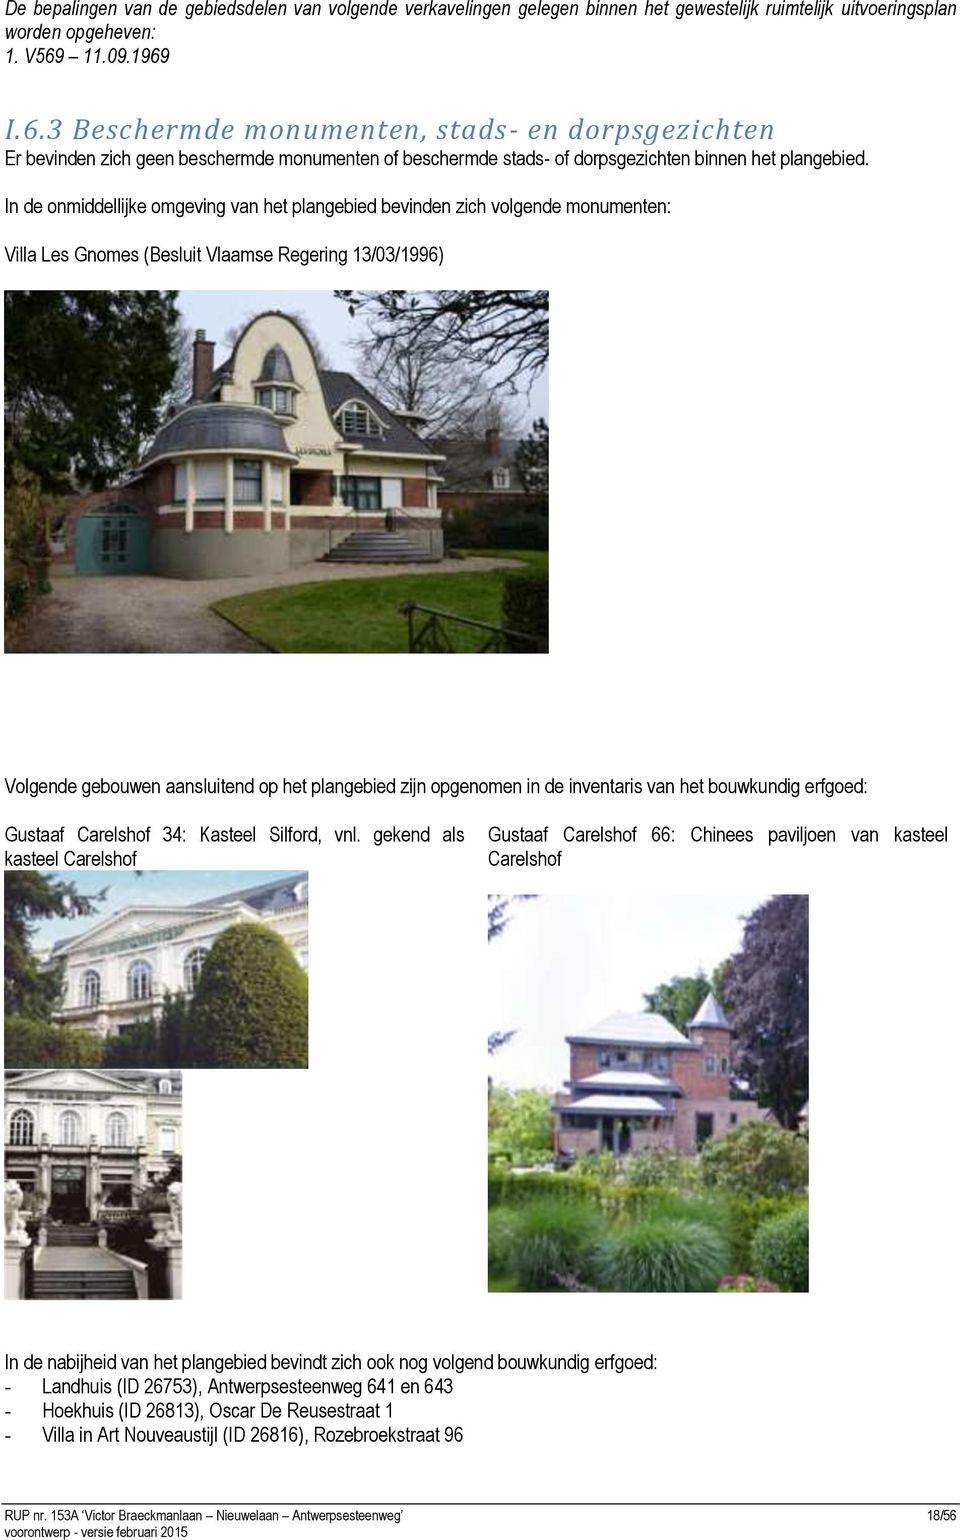 In de onmiddellijke omgeving van het plangebied bevinden zich volgende monumenten: Villa Les Gnomes (Besluit Vlaamse Regering 13/03/1996) Volgende gebouwen aansluitend op het plangebied zijn